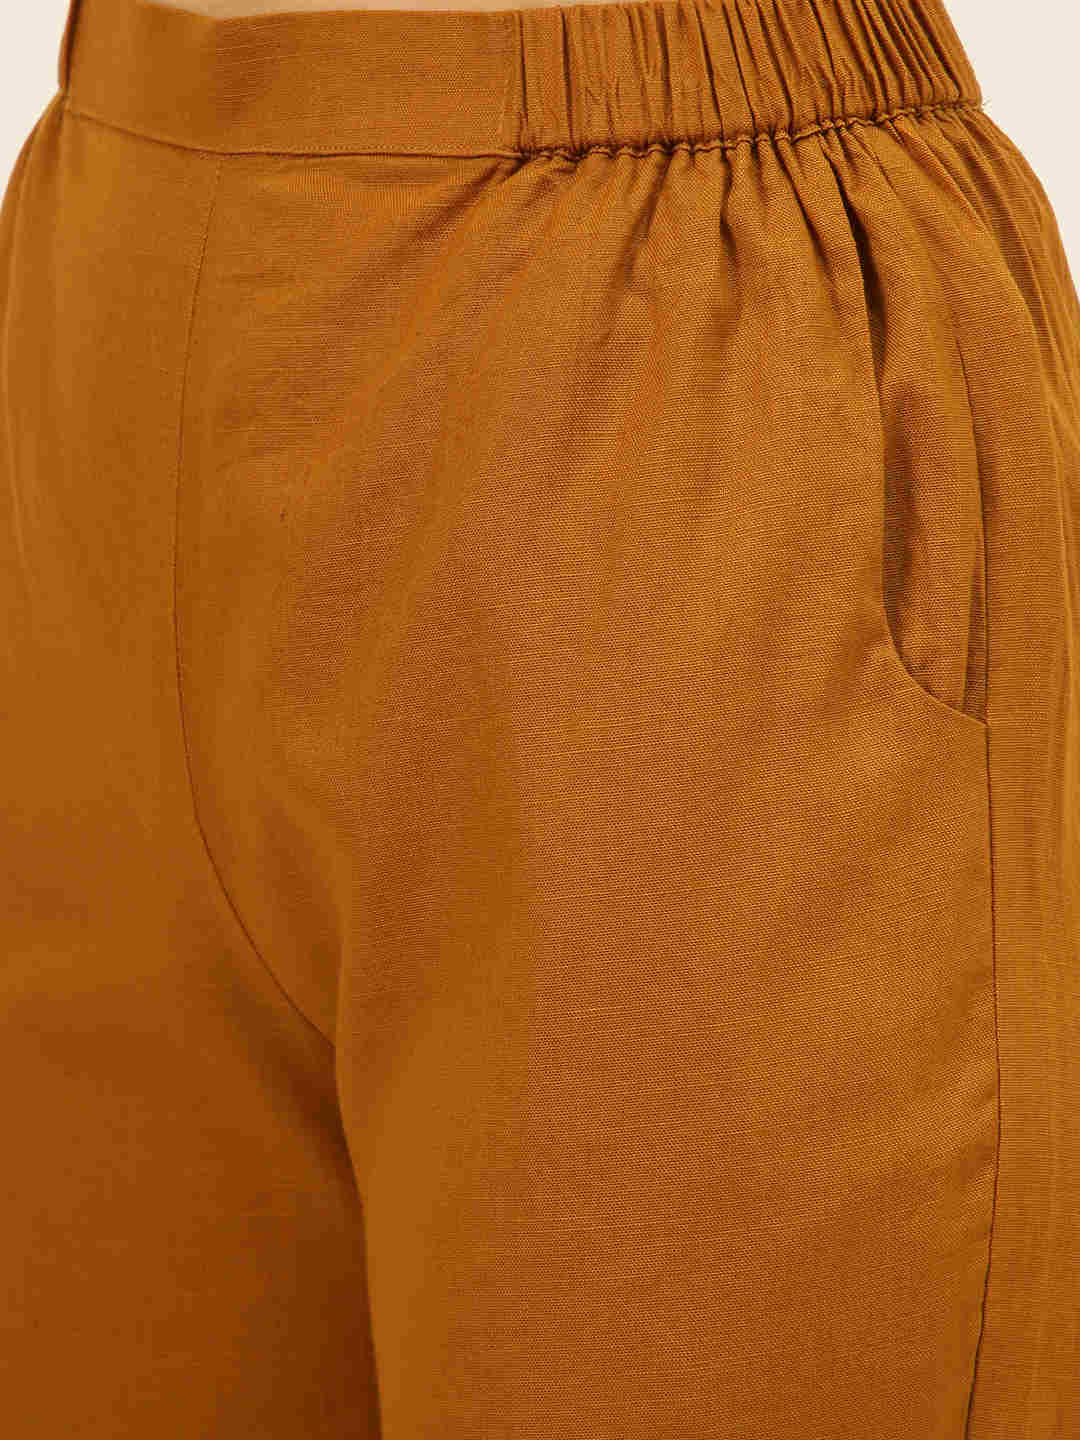 Premium Mustard Cotton Linen Crop Shirt & Trouser Slim Fit Co-ord Set